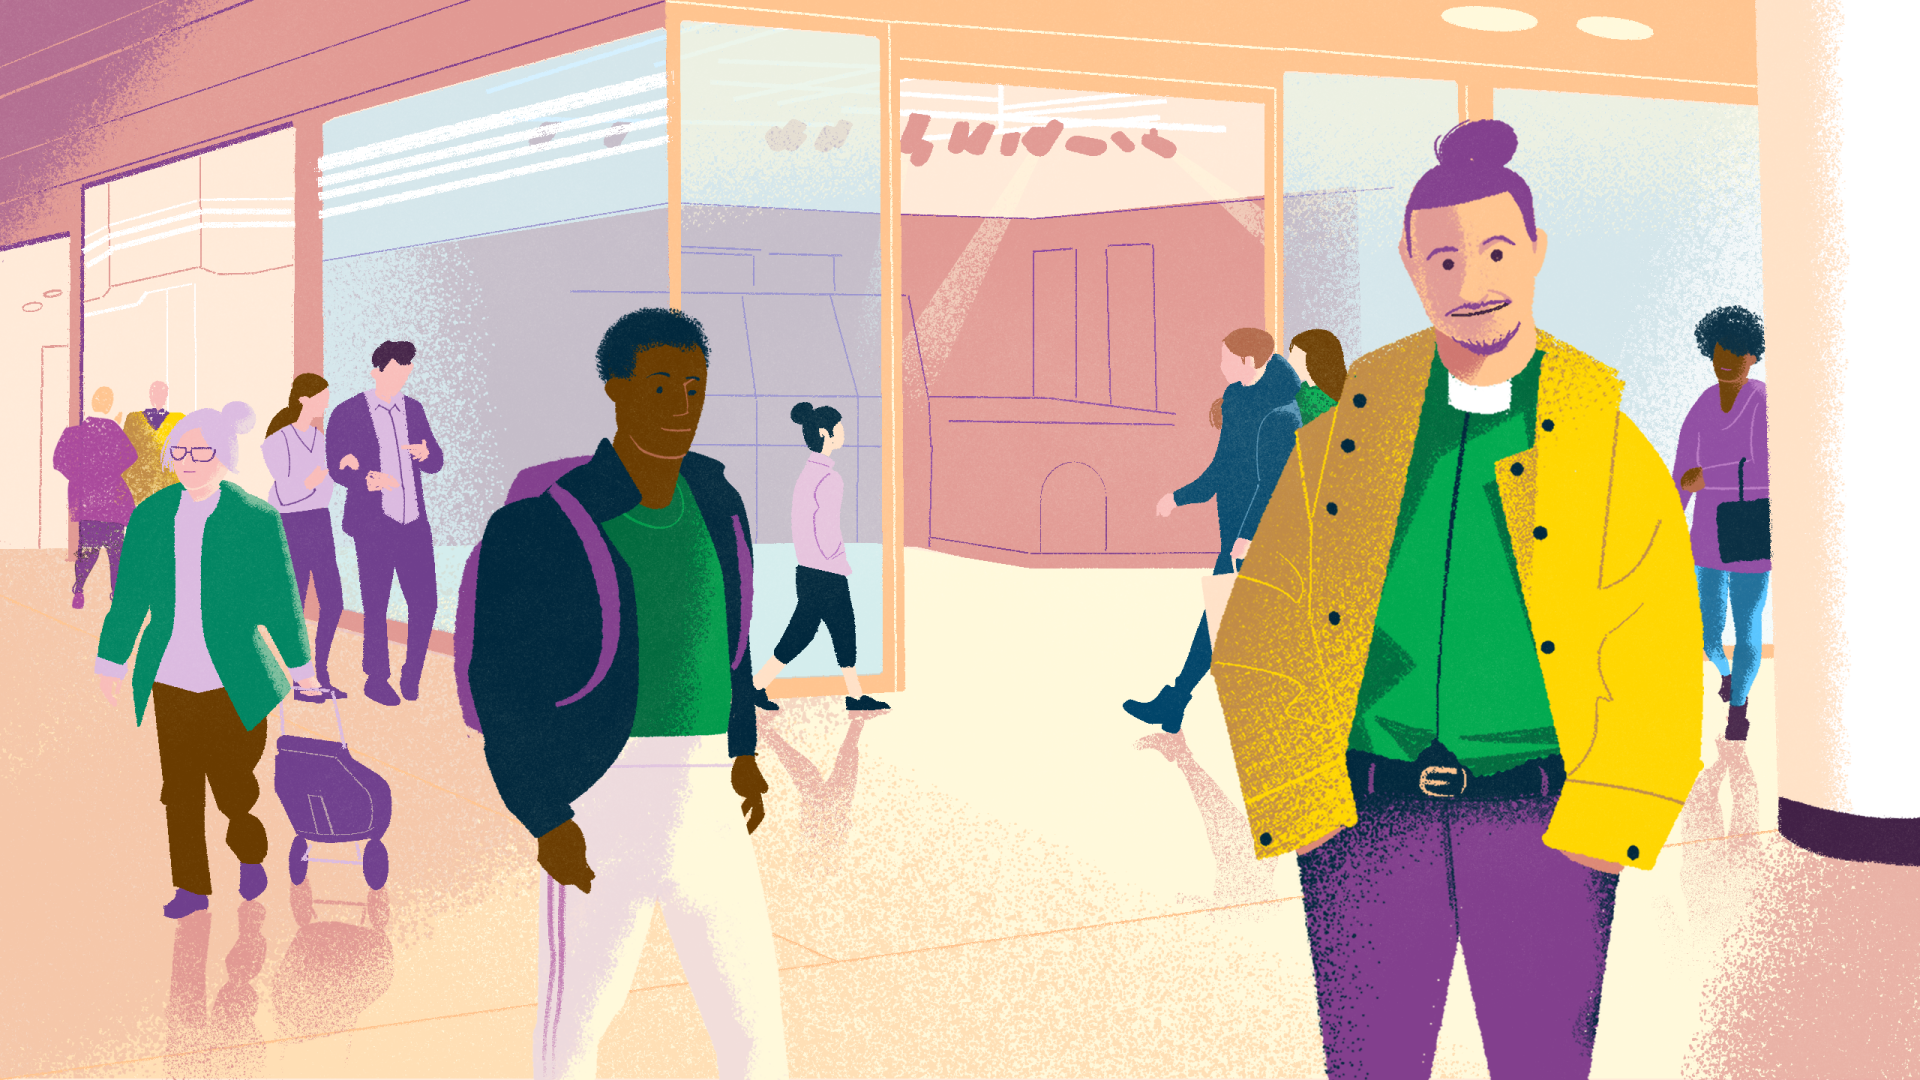 Tecknad bild av människor som rör sig i köpcenter, i förgrunden en man i grön diakonskjorta, gul jacka och håret i knut.